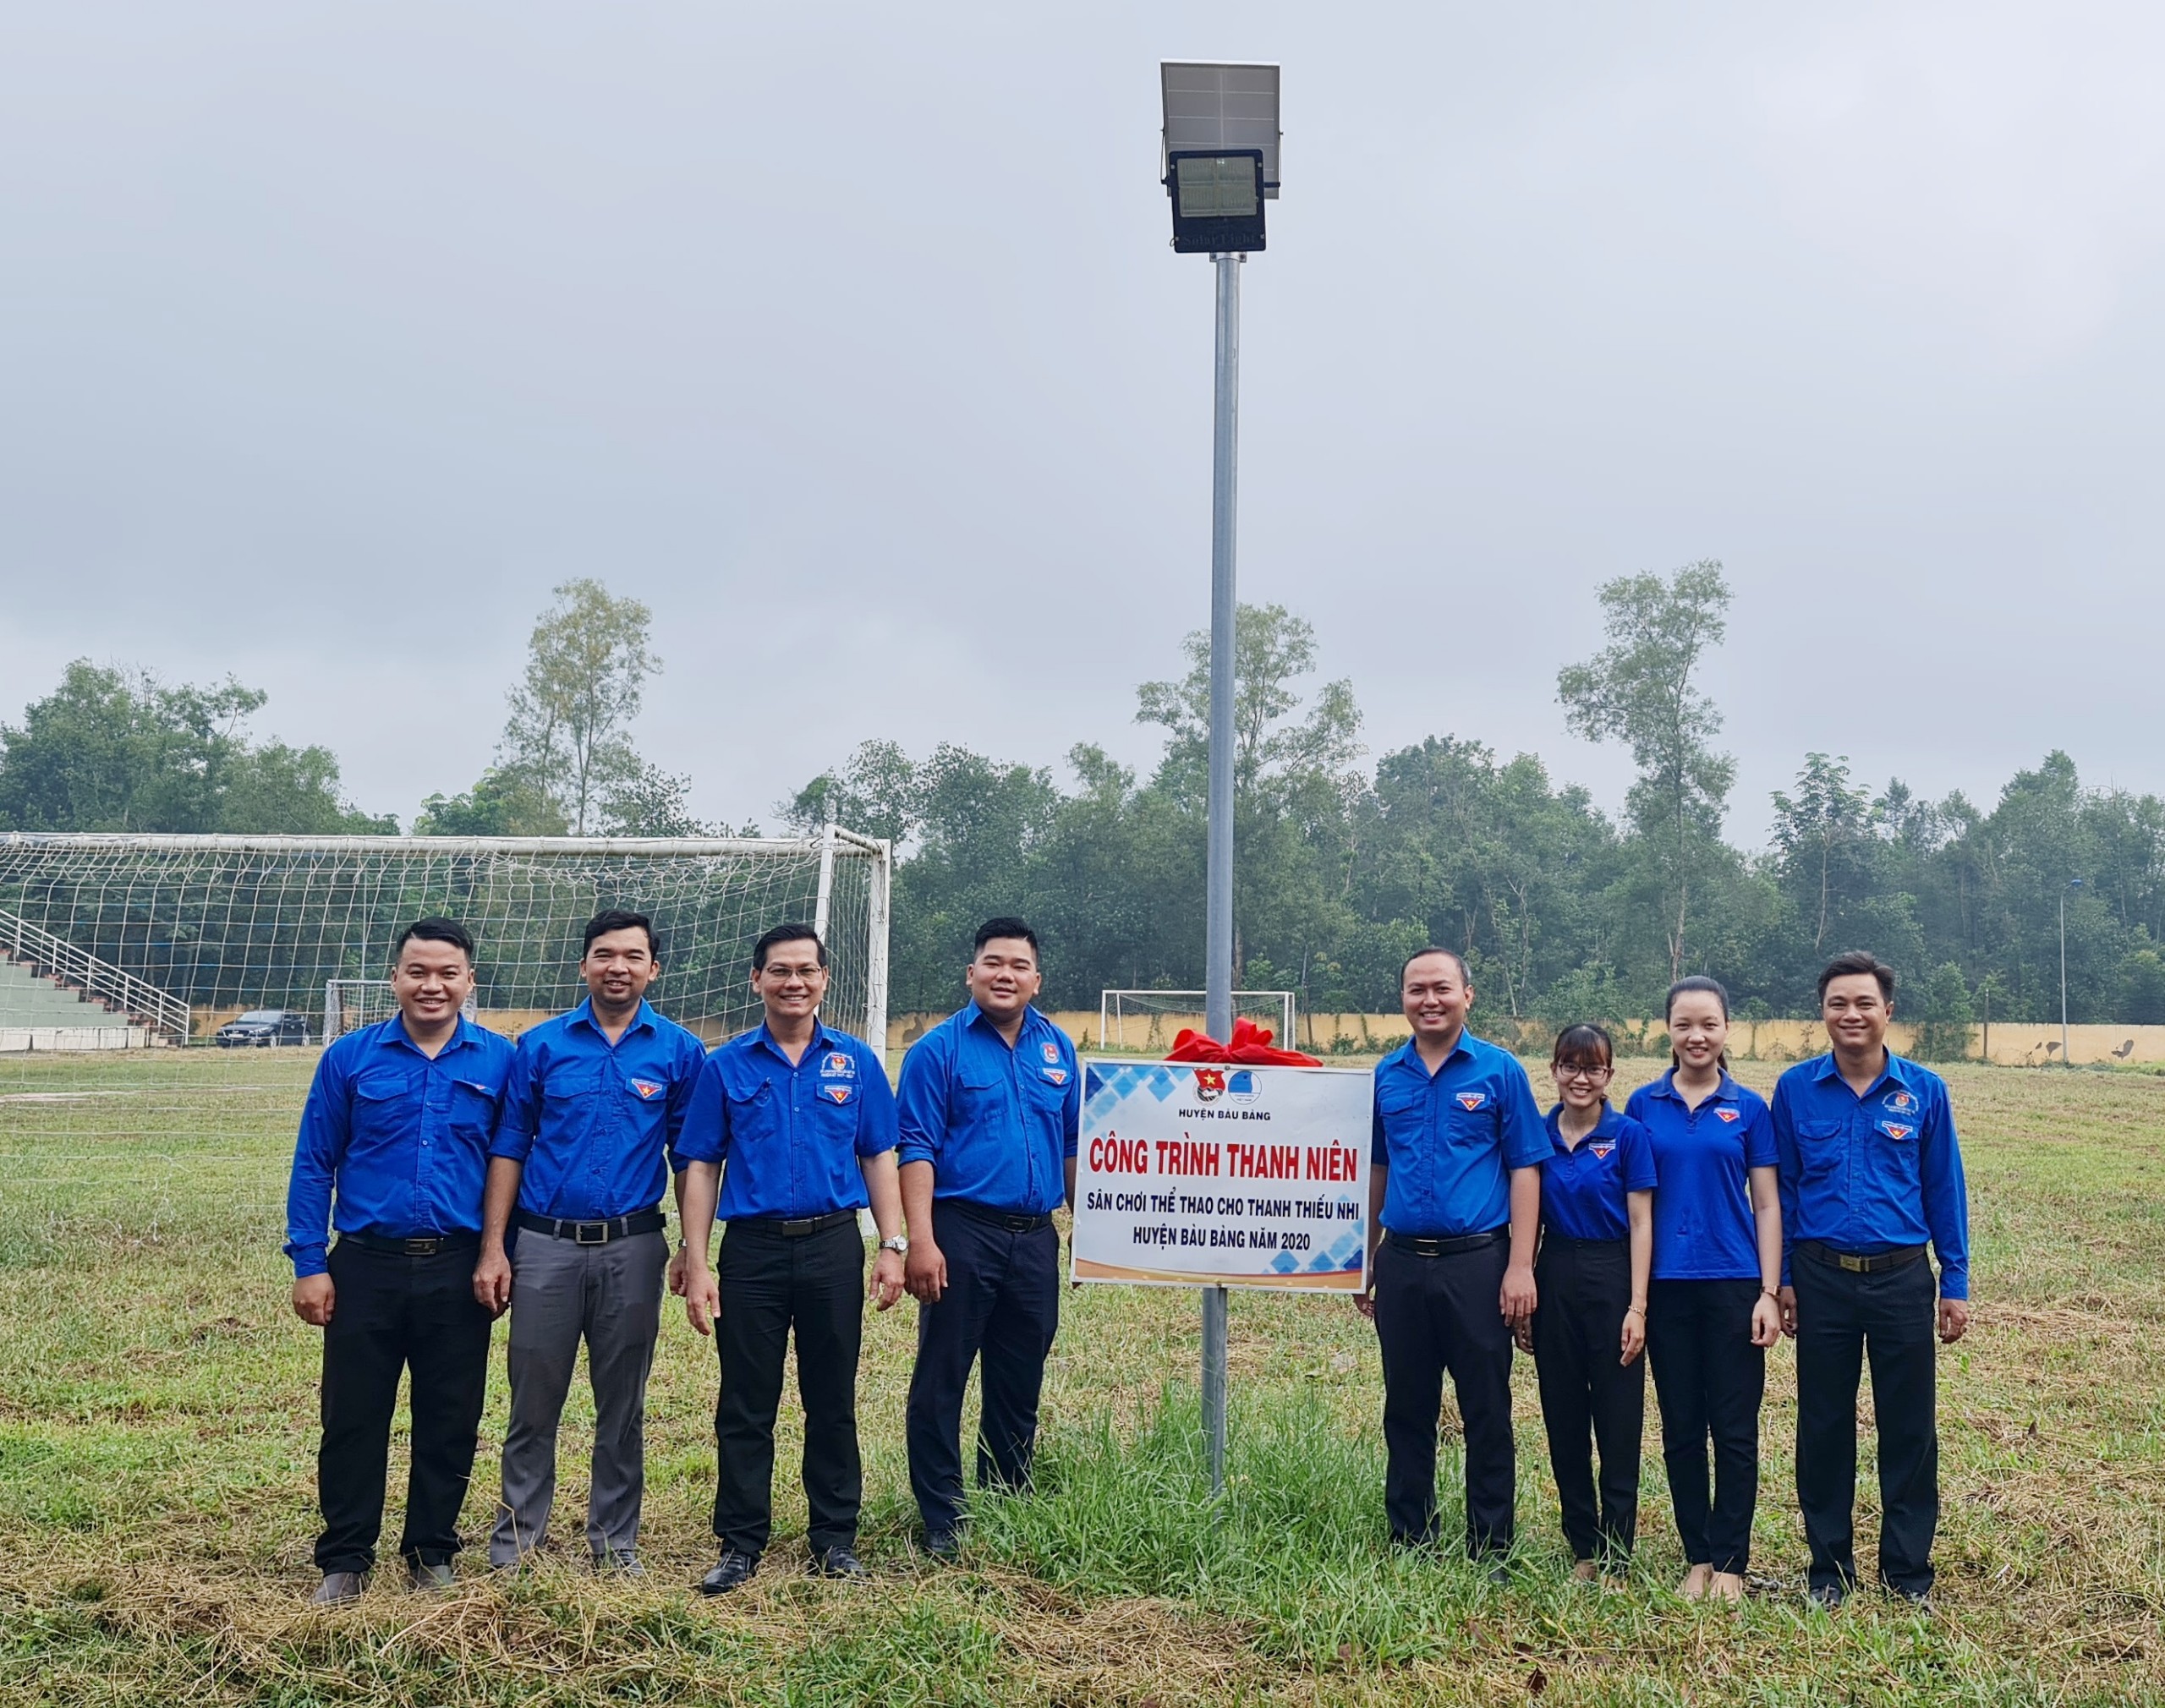 Huyện Đoàn, Ủy ban Hội LHTN huyện Bàu Bàng đã tổ chức khánh thành sân chơi thể thao cho thanh thiếu nhi huyện Bàu Bàng.